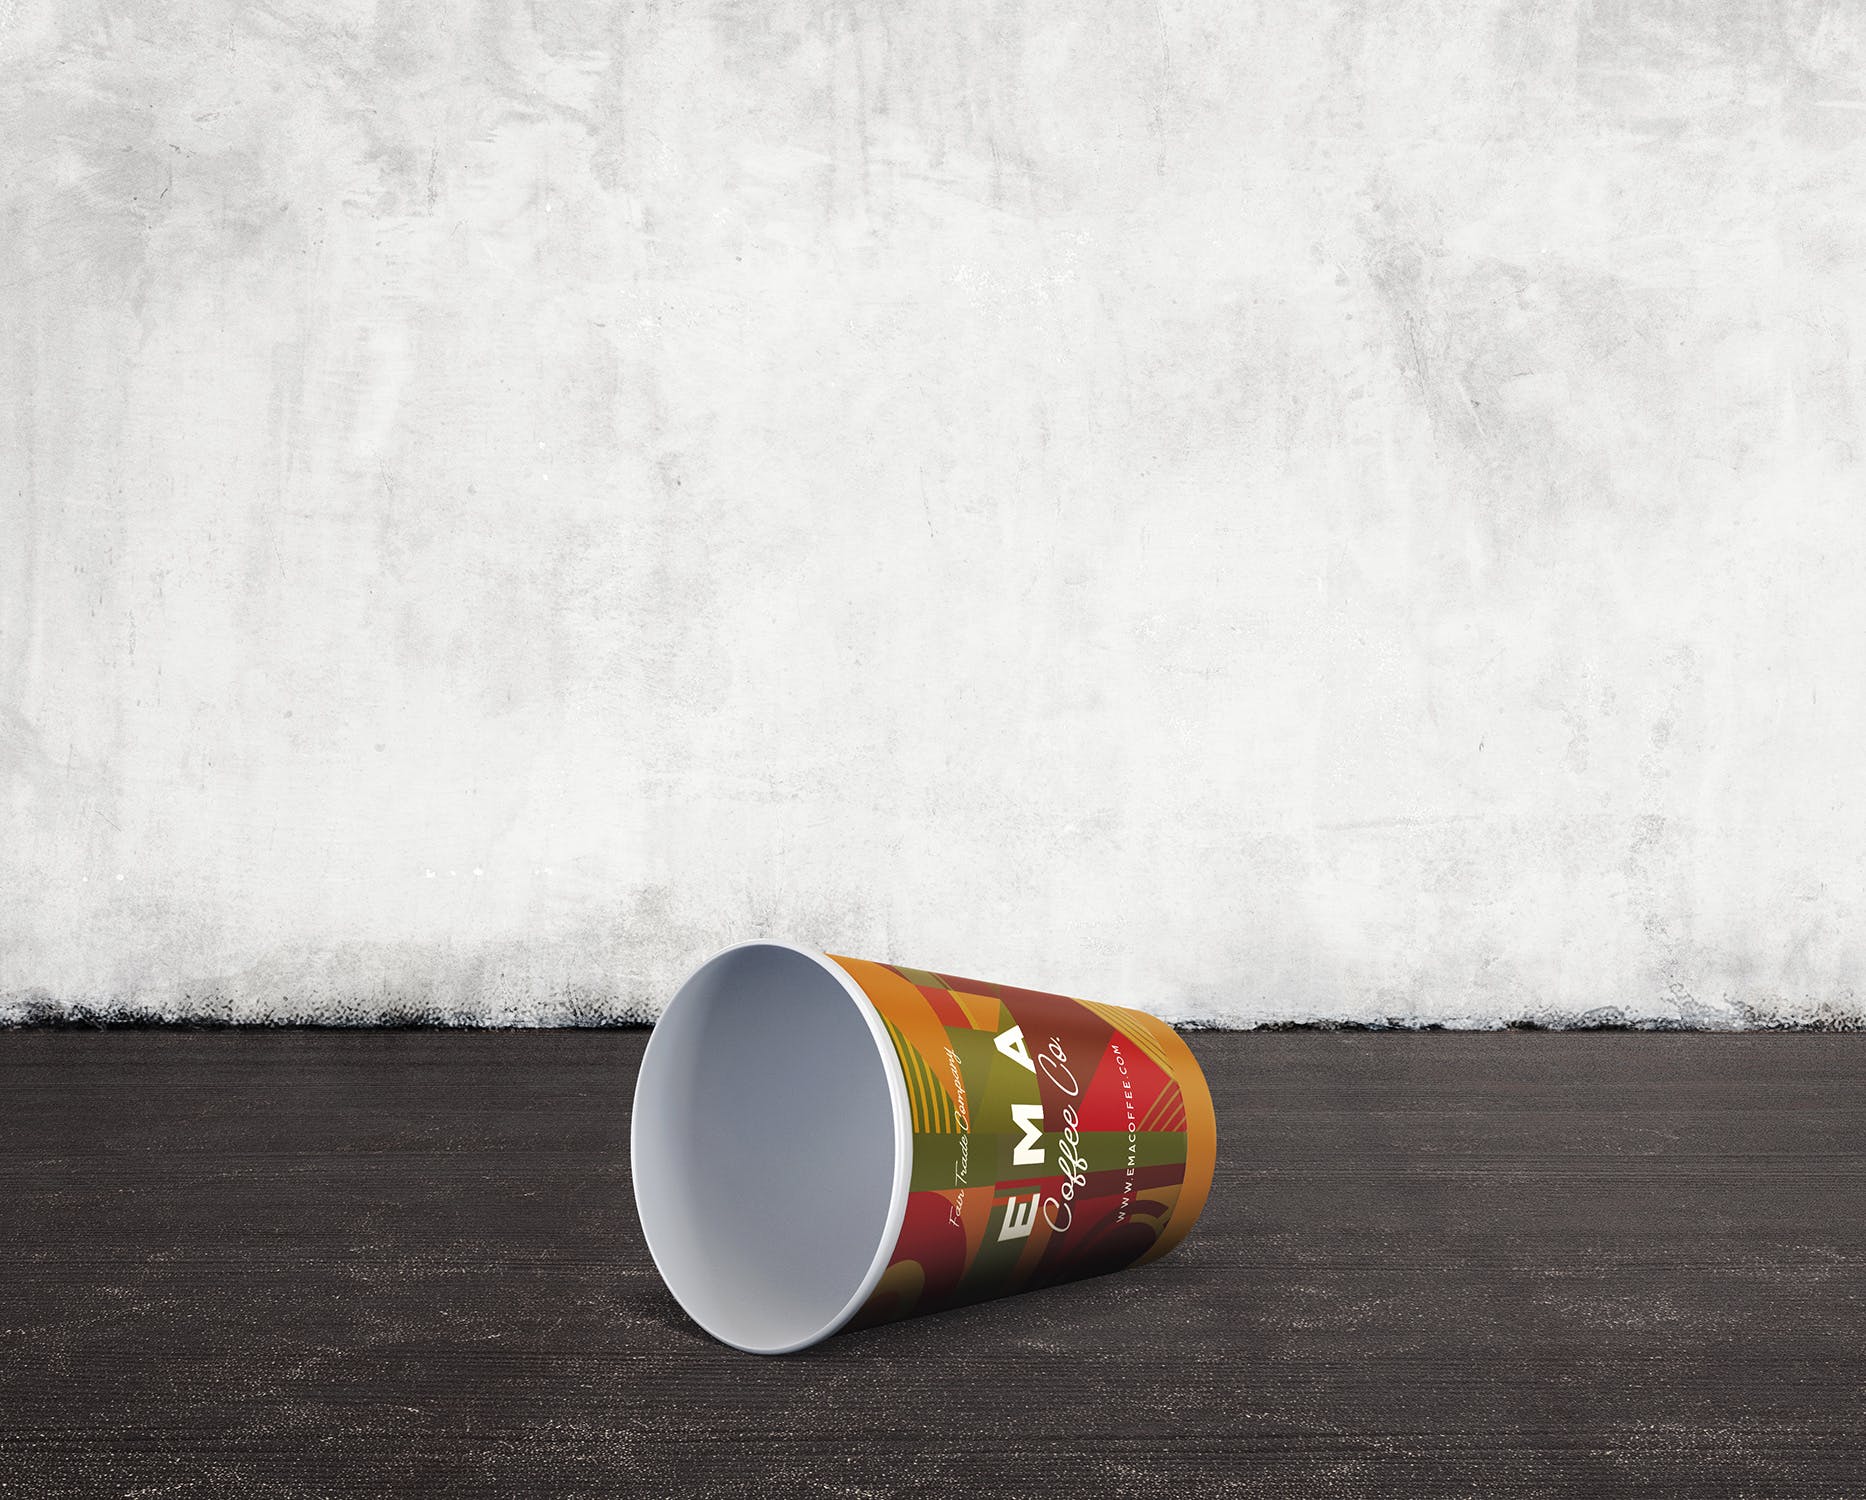 8个咖啡纸杯外观设计效果图素材中国精选 8 Coffee Paper Cup Mockups插图(5)